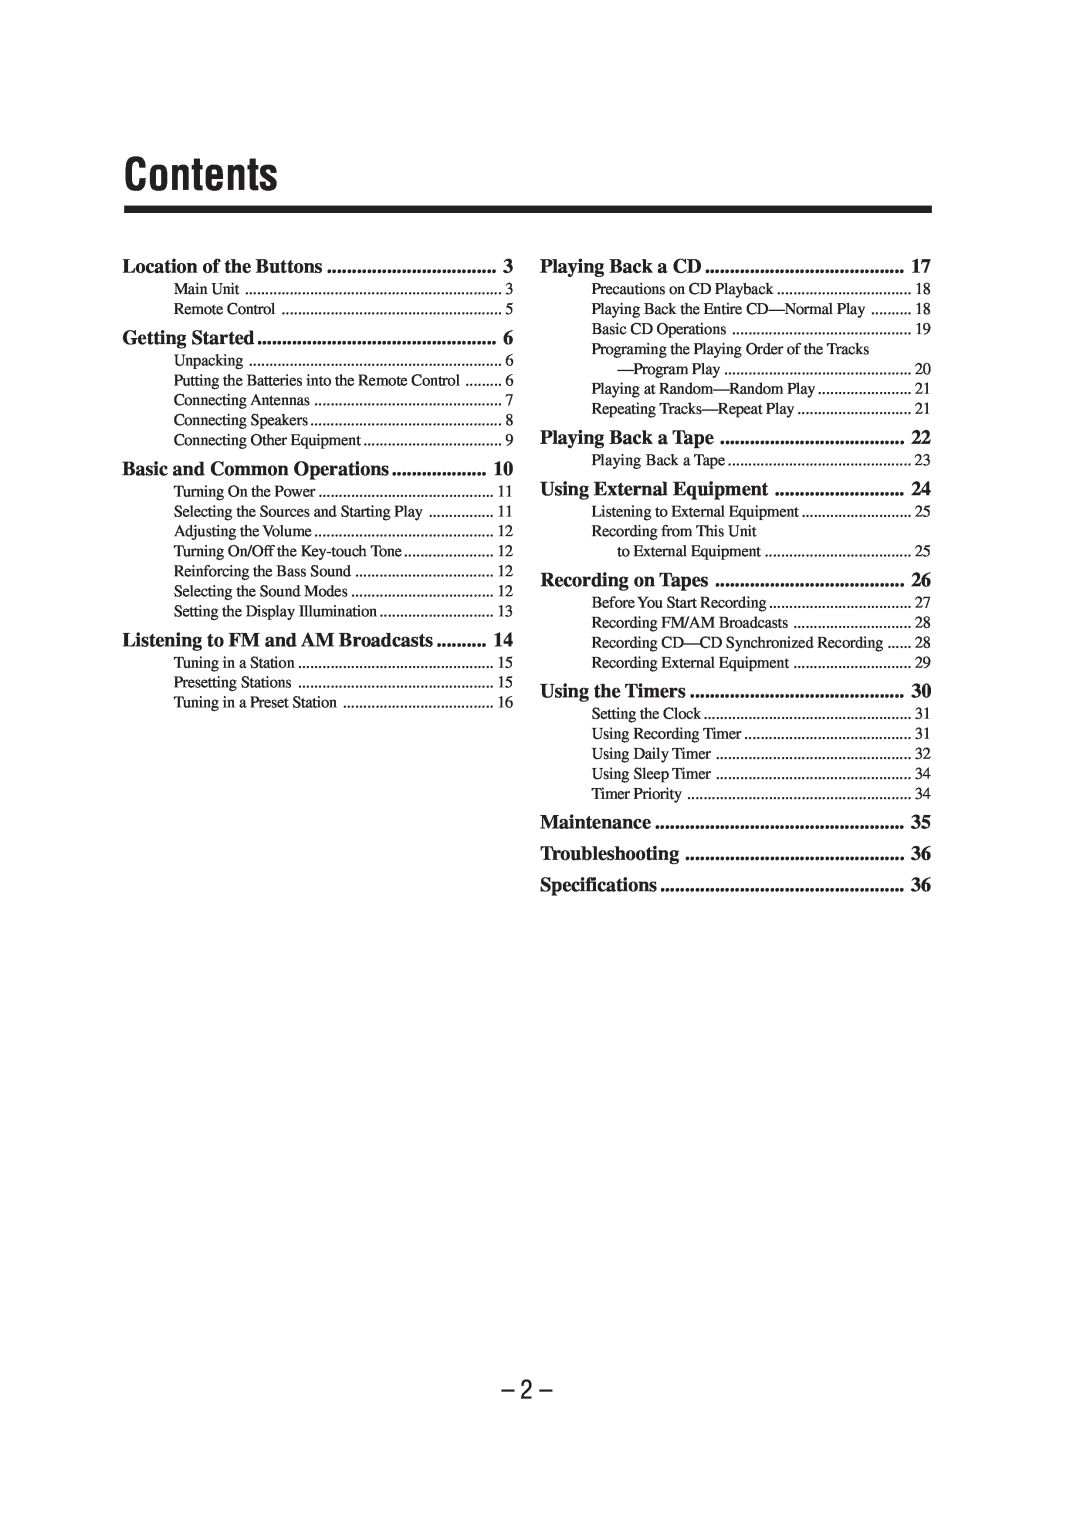 JVC FS-A52 manual Contents 